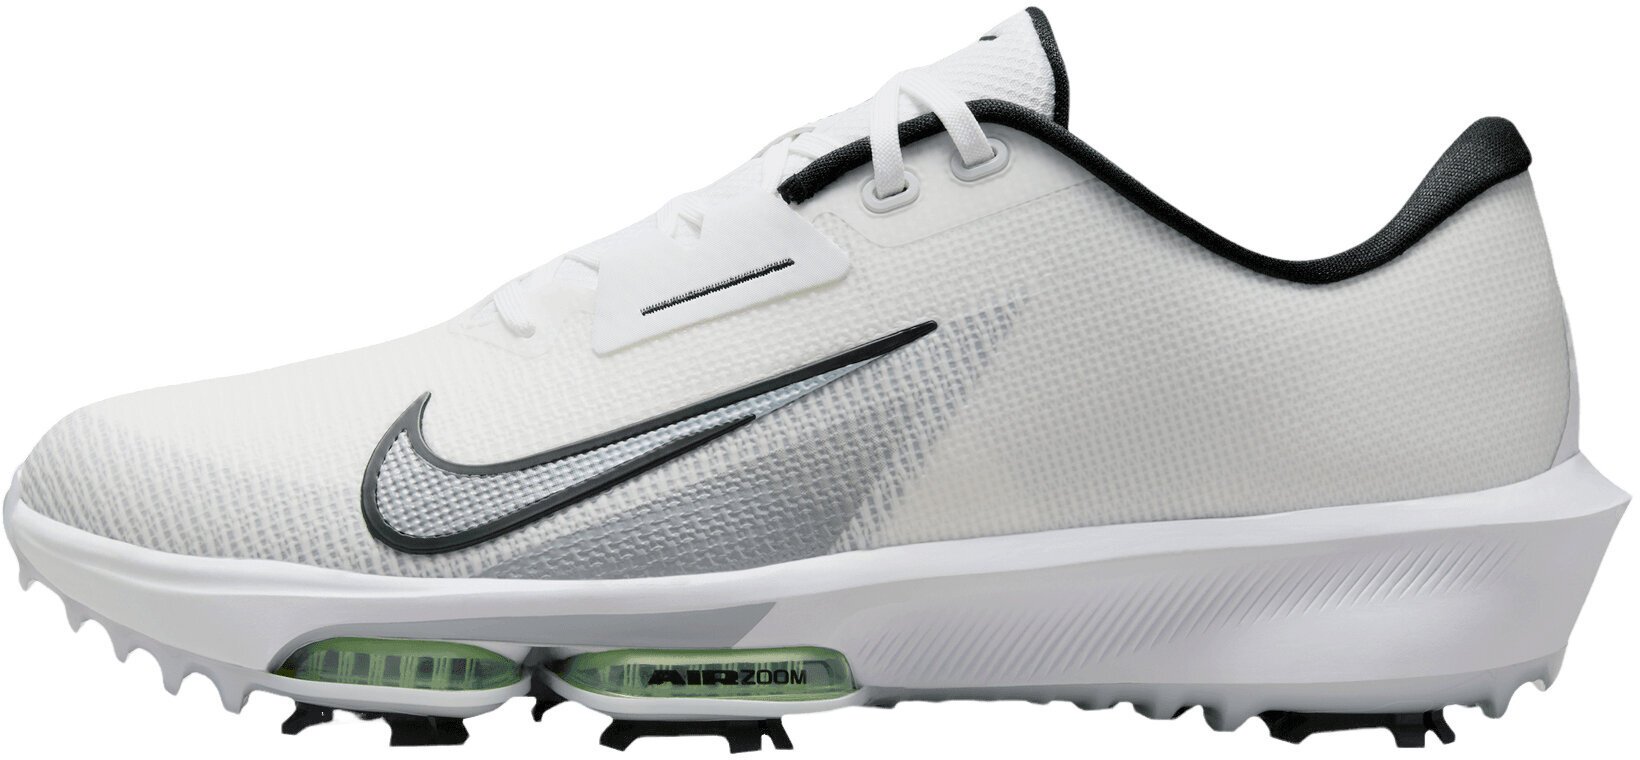 Chaussures de golf pour hommes Nike Air Zoom Infinity Tour Next 2 Unisex Golf Shoes White/Black/Vapor Green/Pure Platinum 44